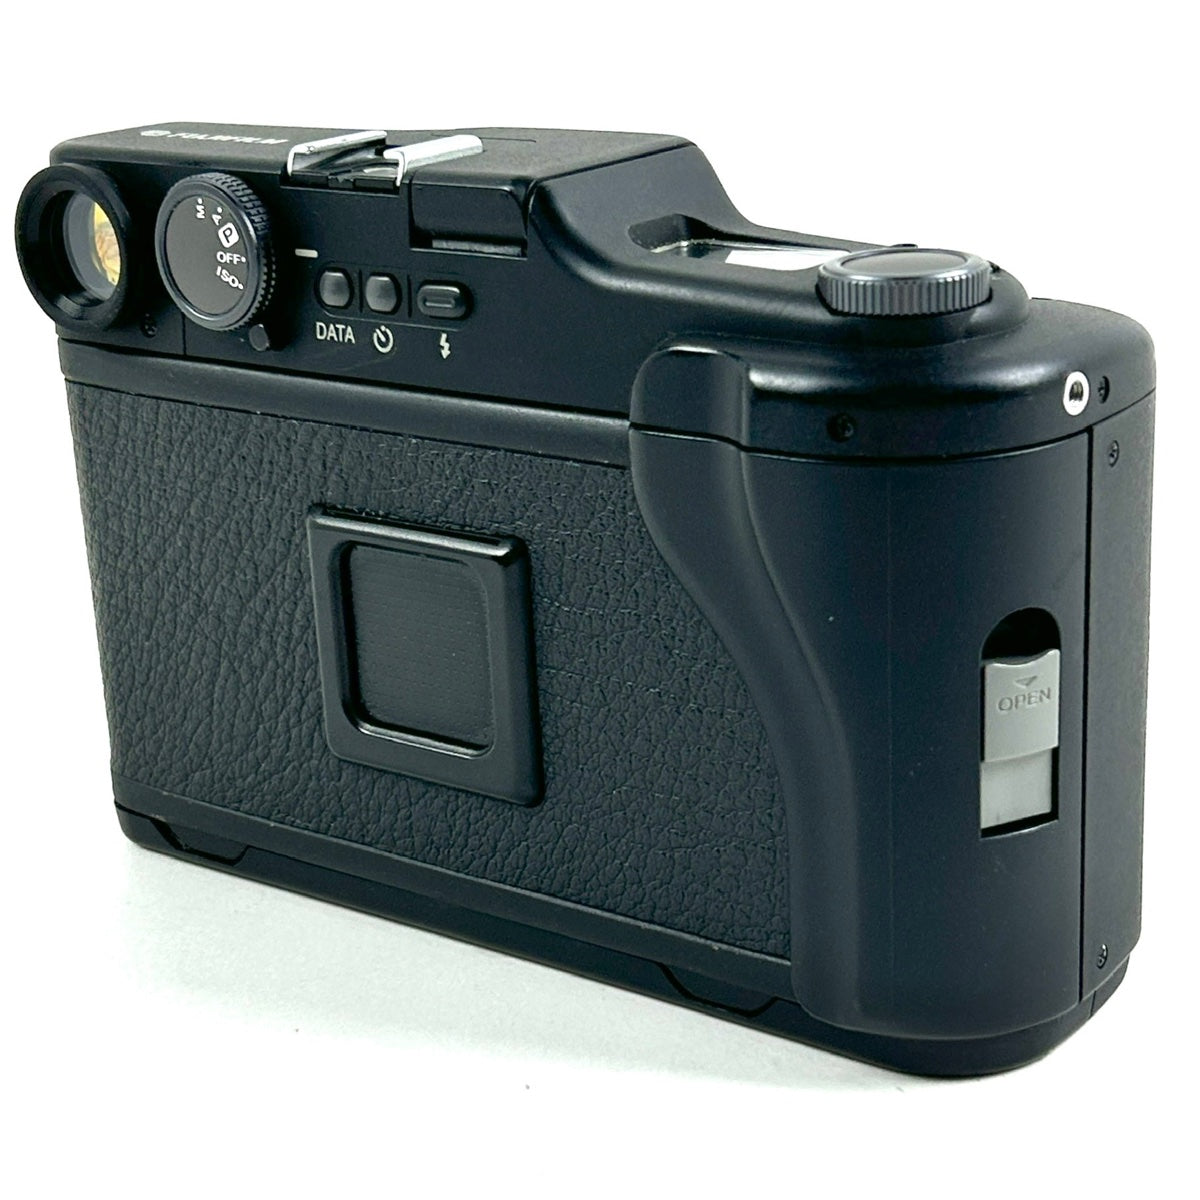 FUJIFILM GA645i professional フイルムカメラ本体キャップストラップカバー